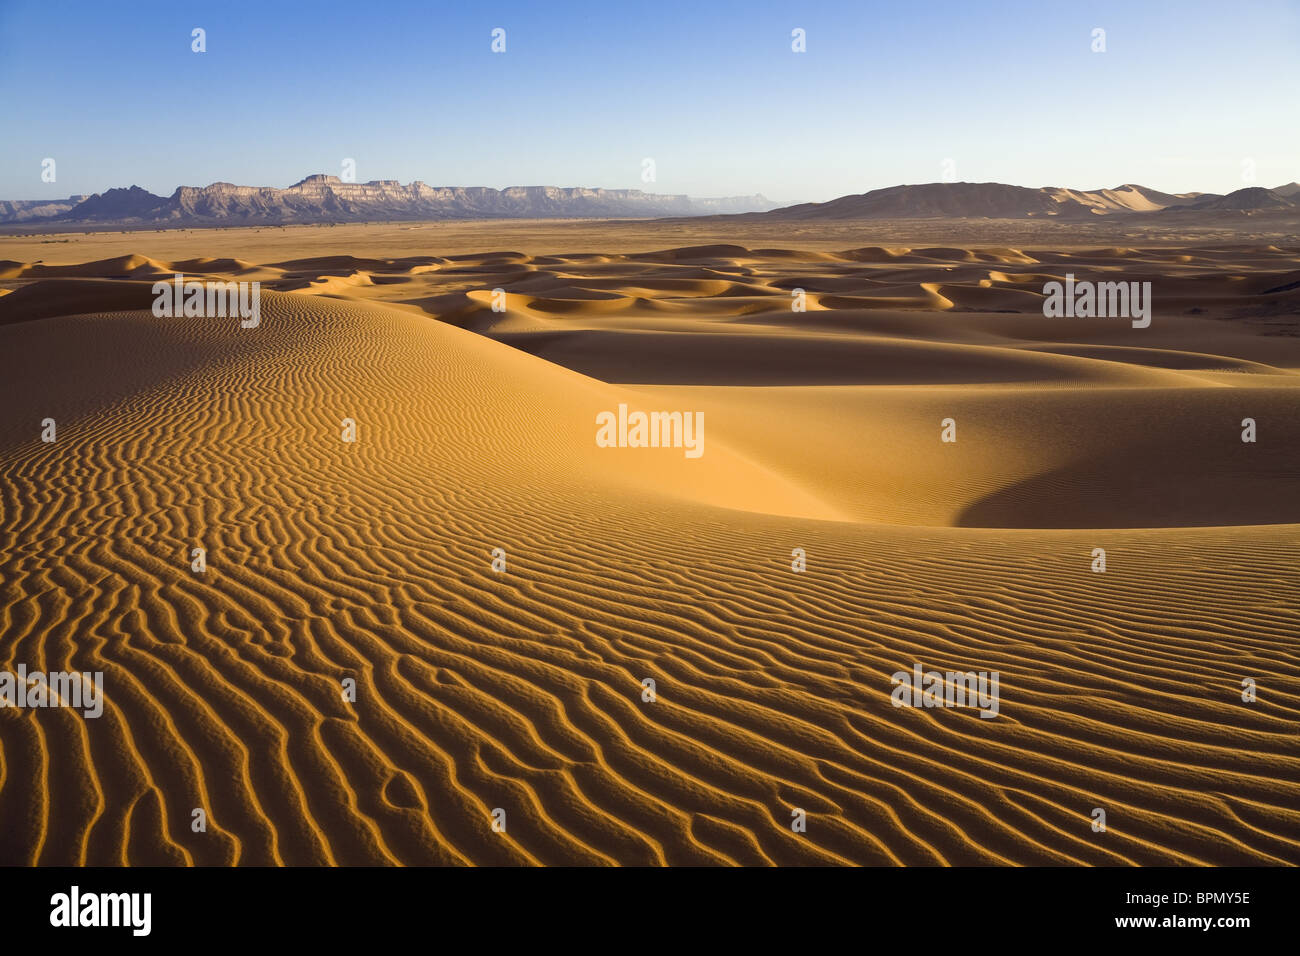 Sanddunes dans désert montagnes près de Awenat, Akakus, Libye, Afrique du Nord Banque D'Images